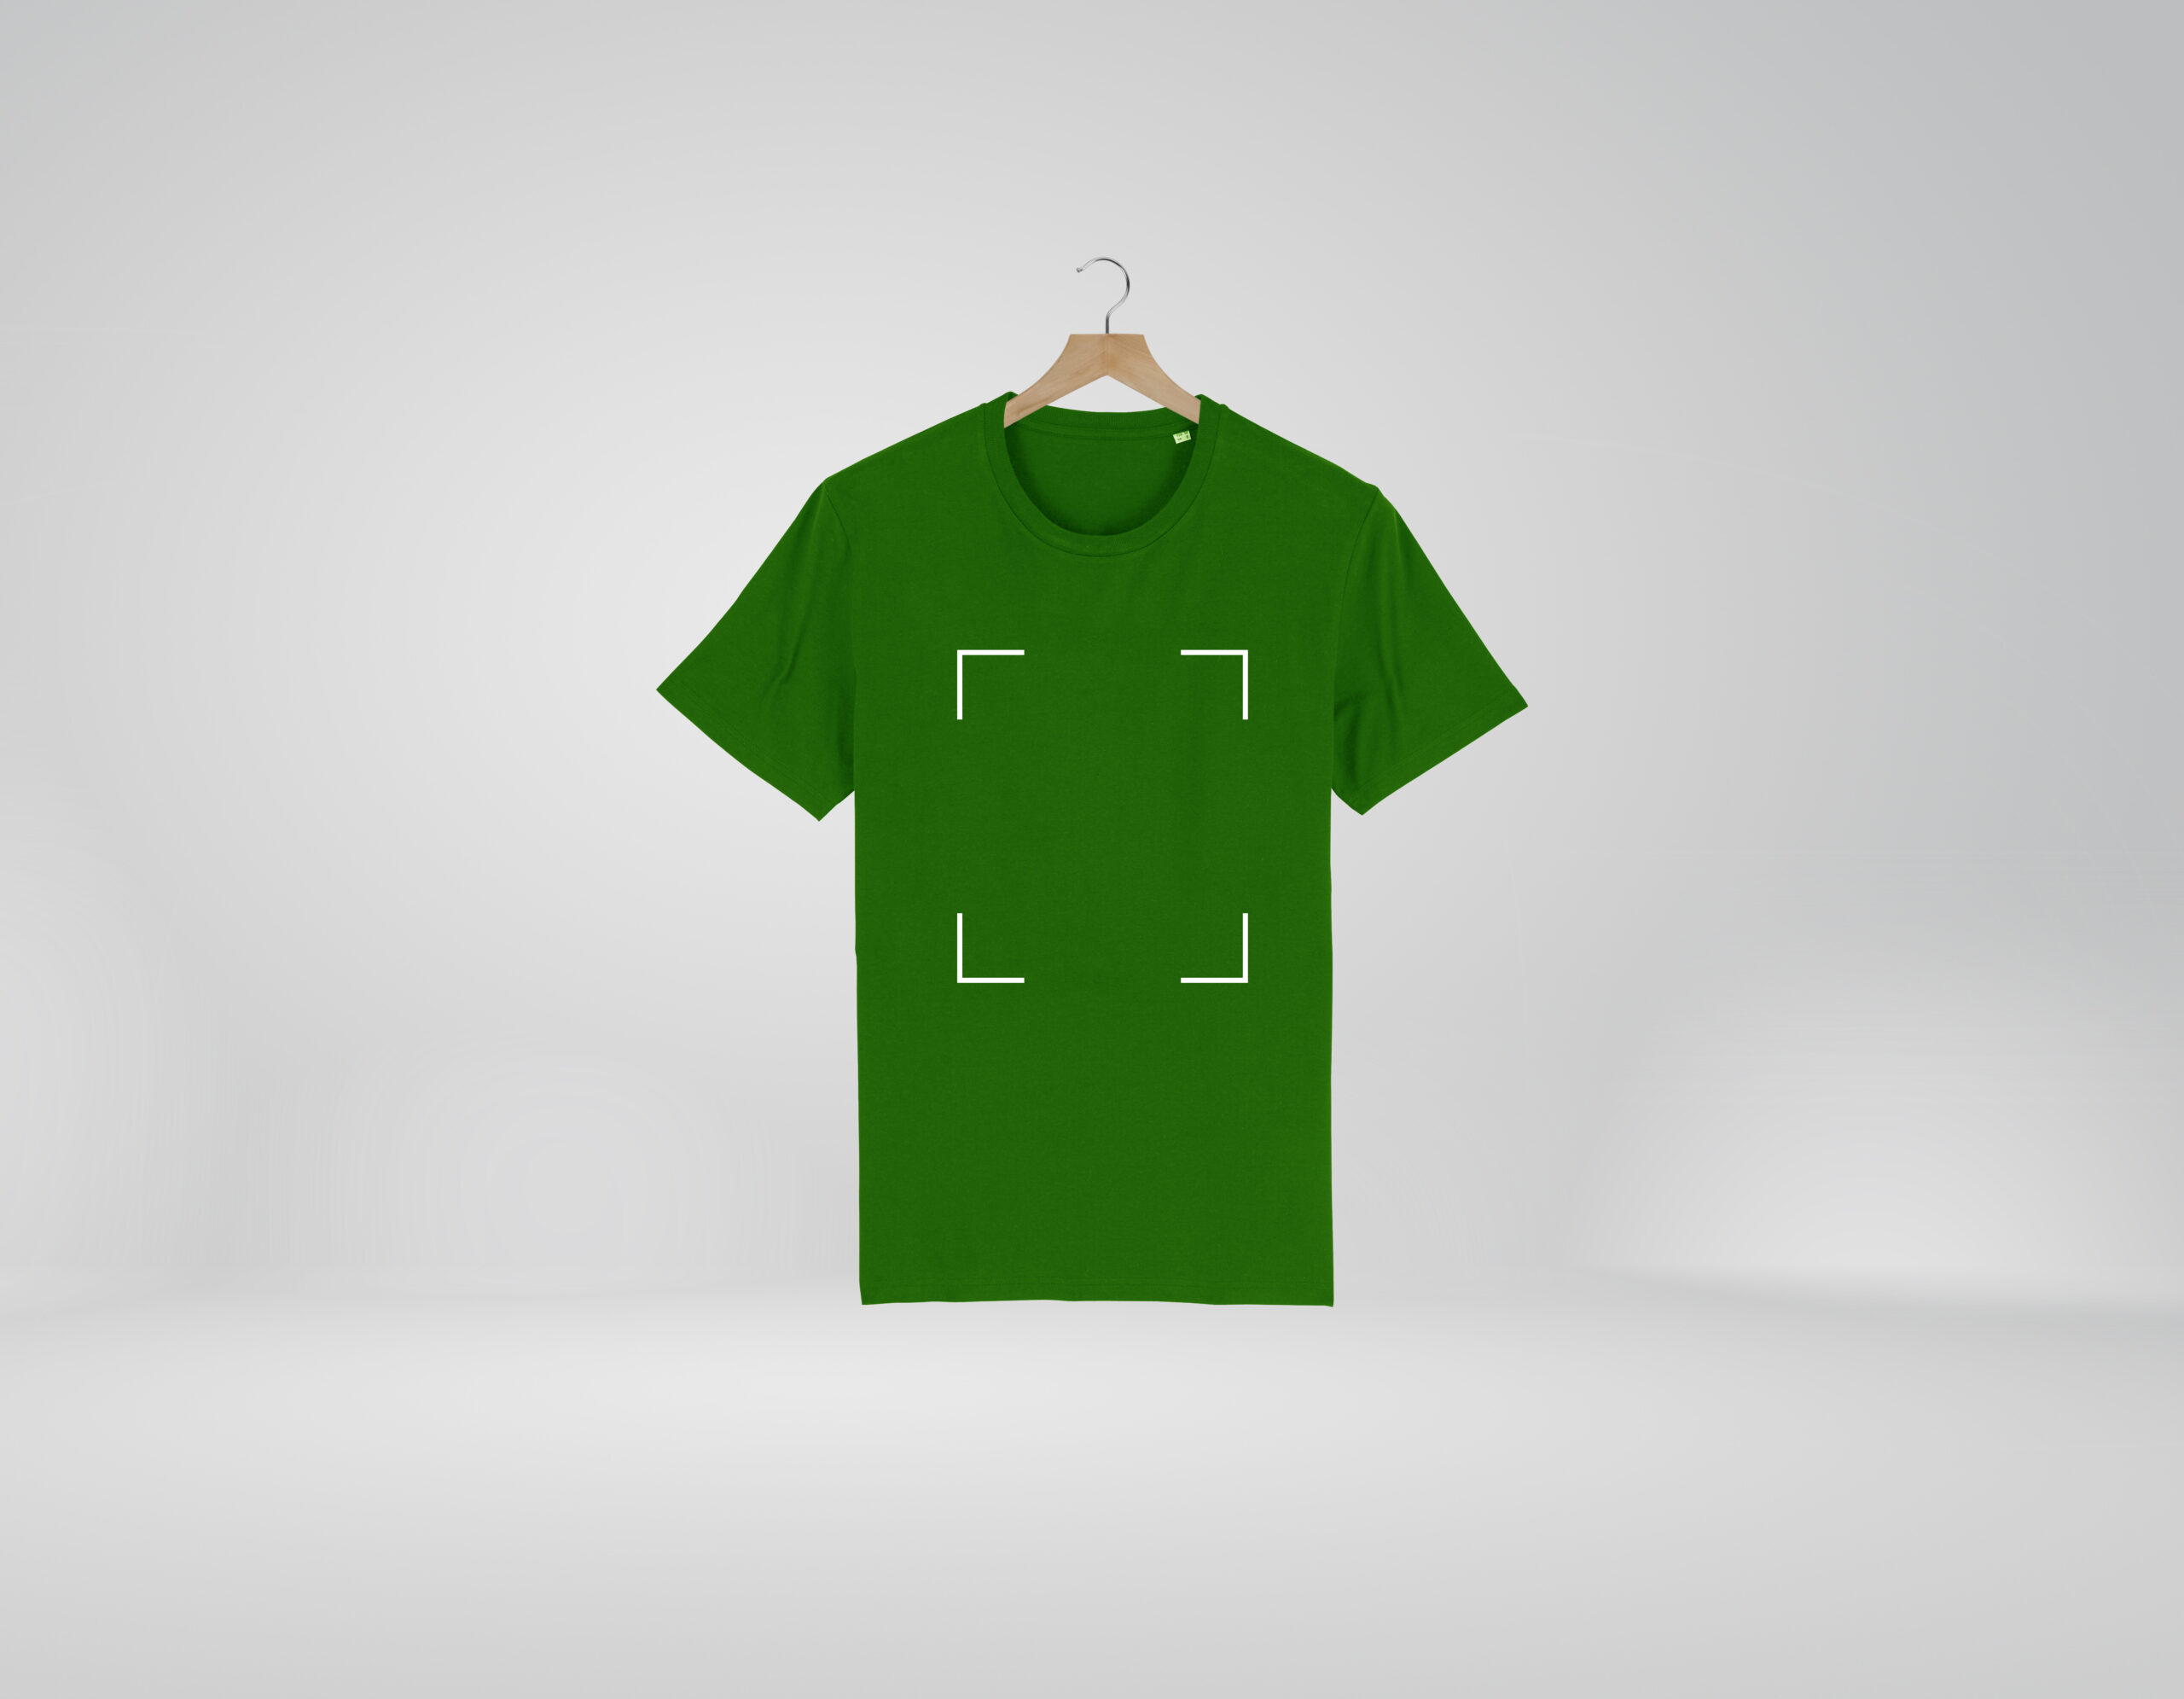 Qué modelo escoger para personalizar tus camisetas? - Createx